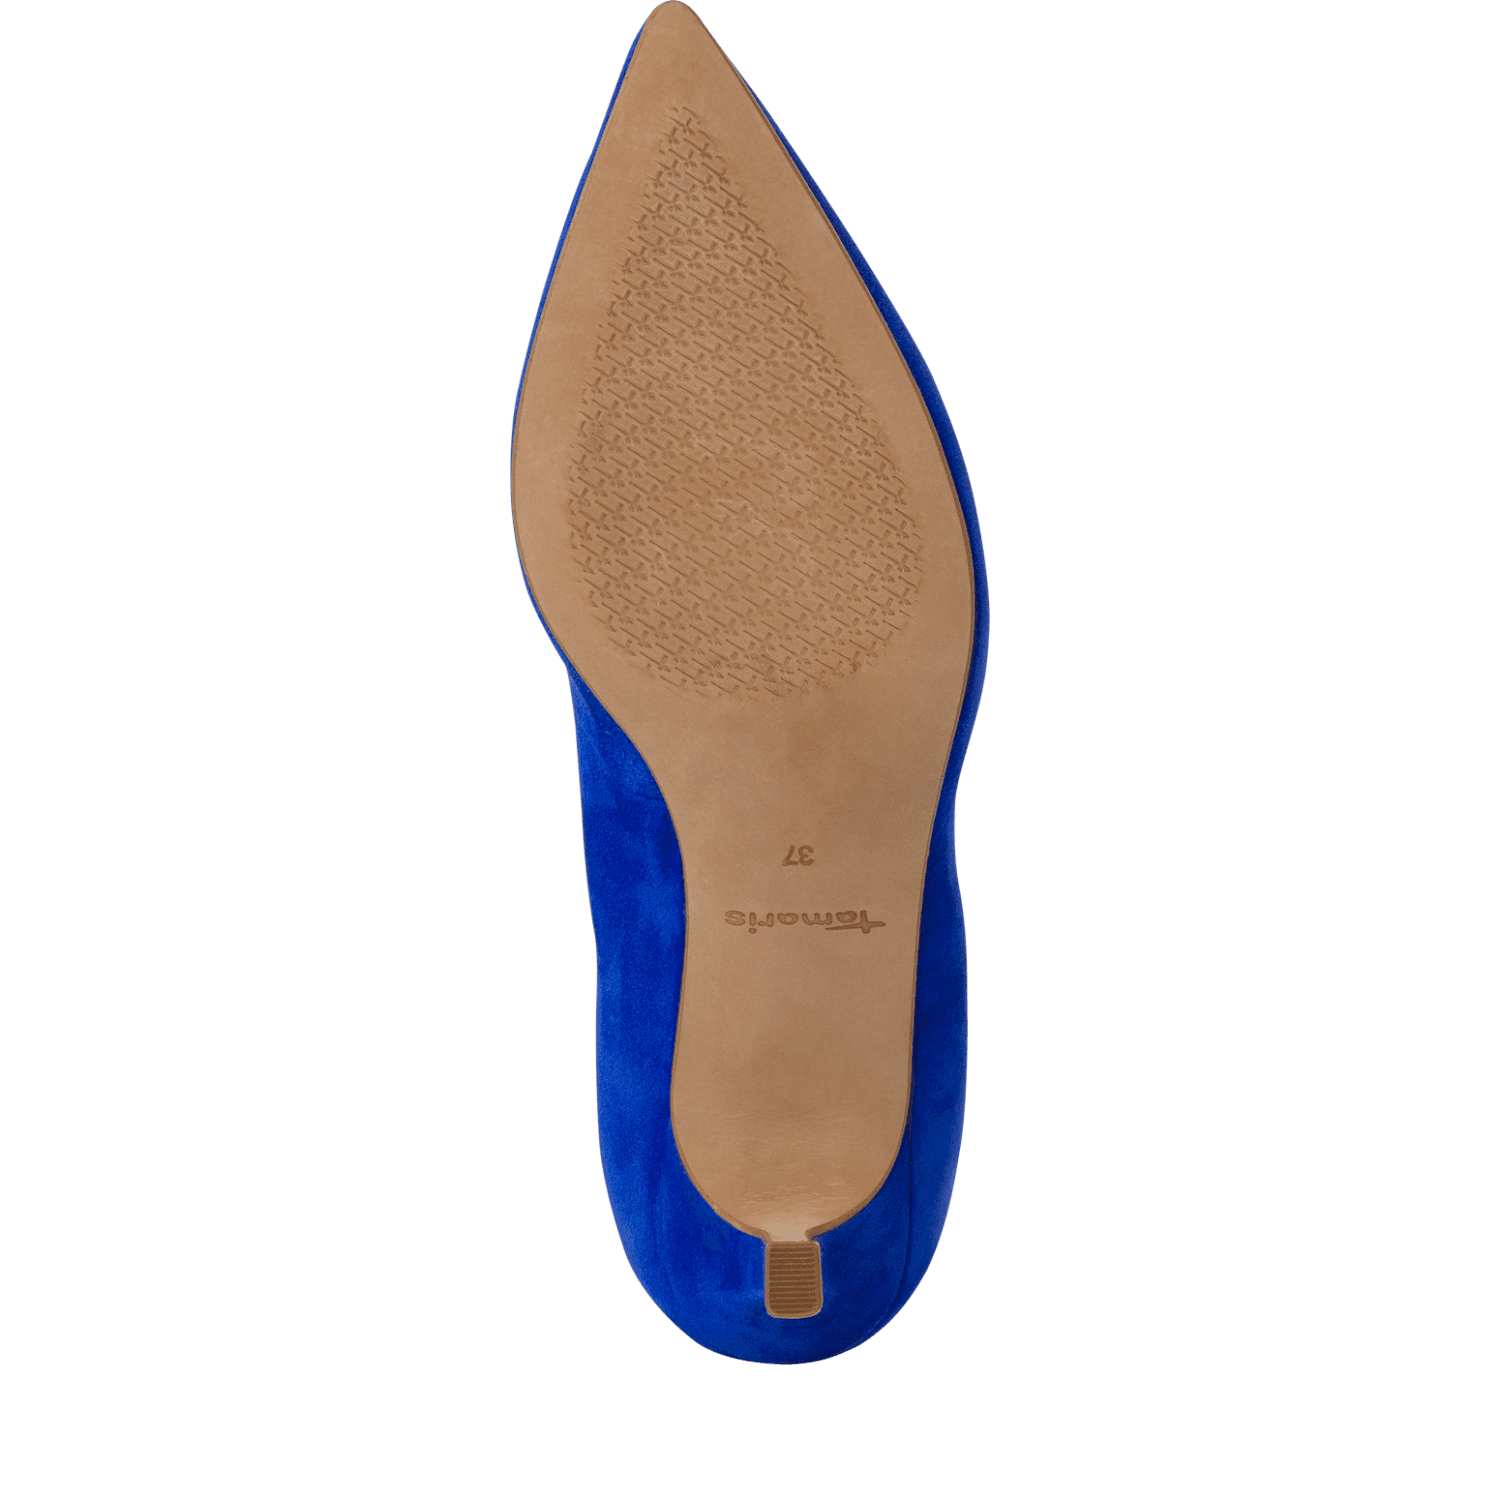 Pantofi Piele Naturala Salma Royal Blue - Tamaris